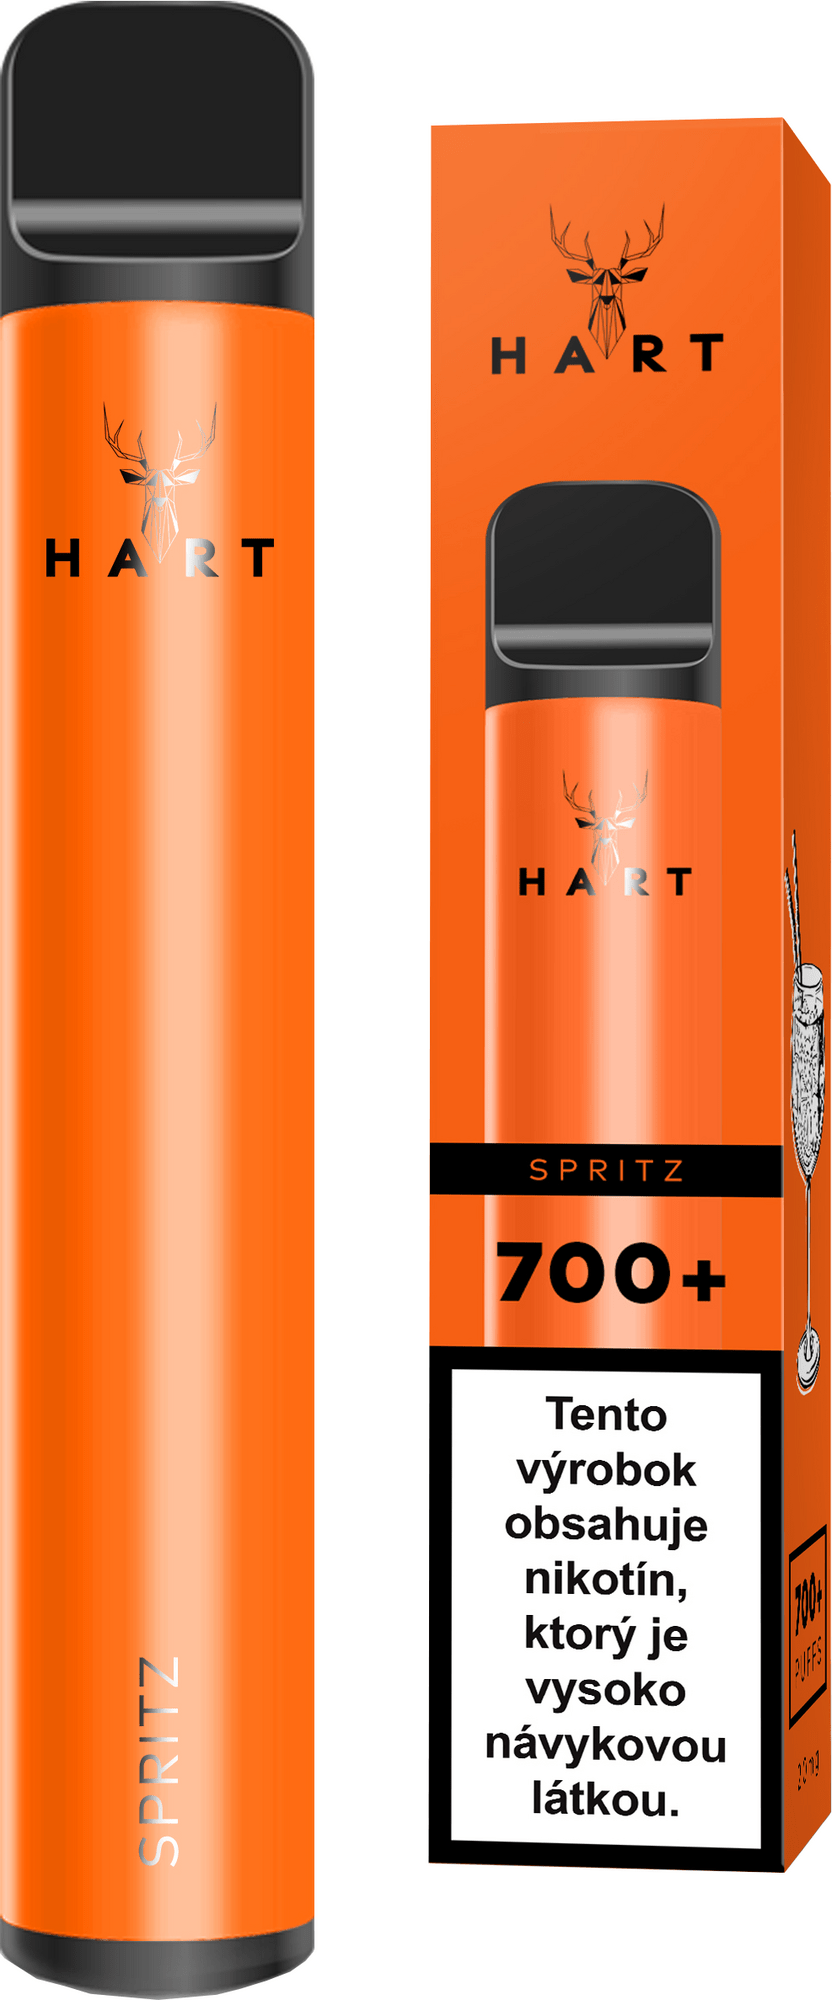 HART Spritz